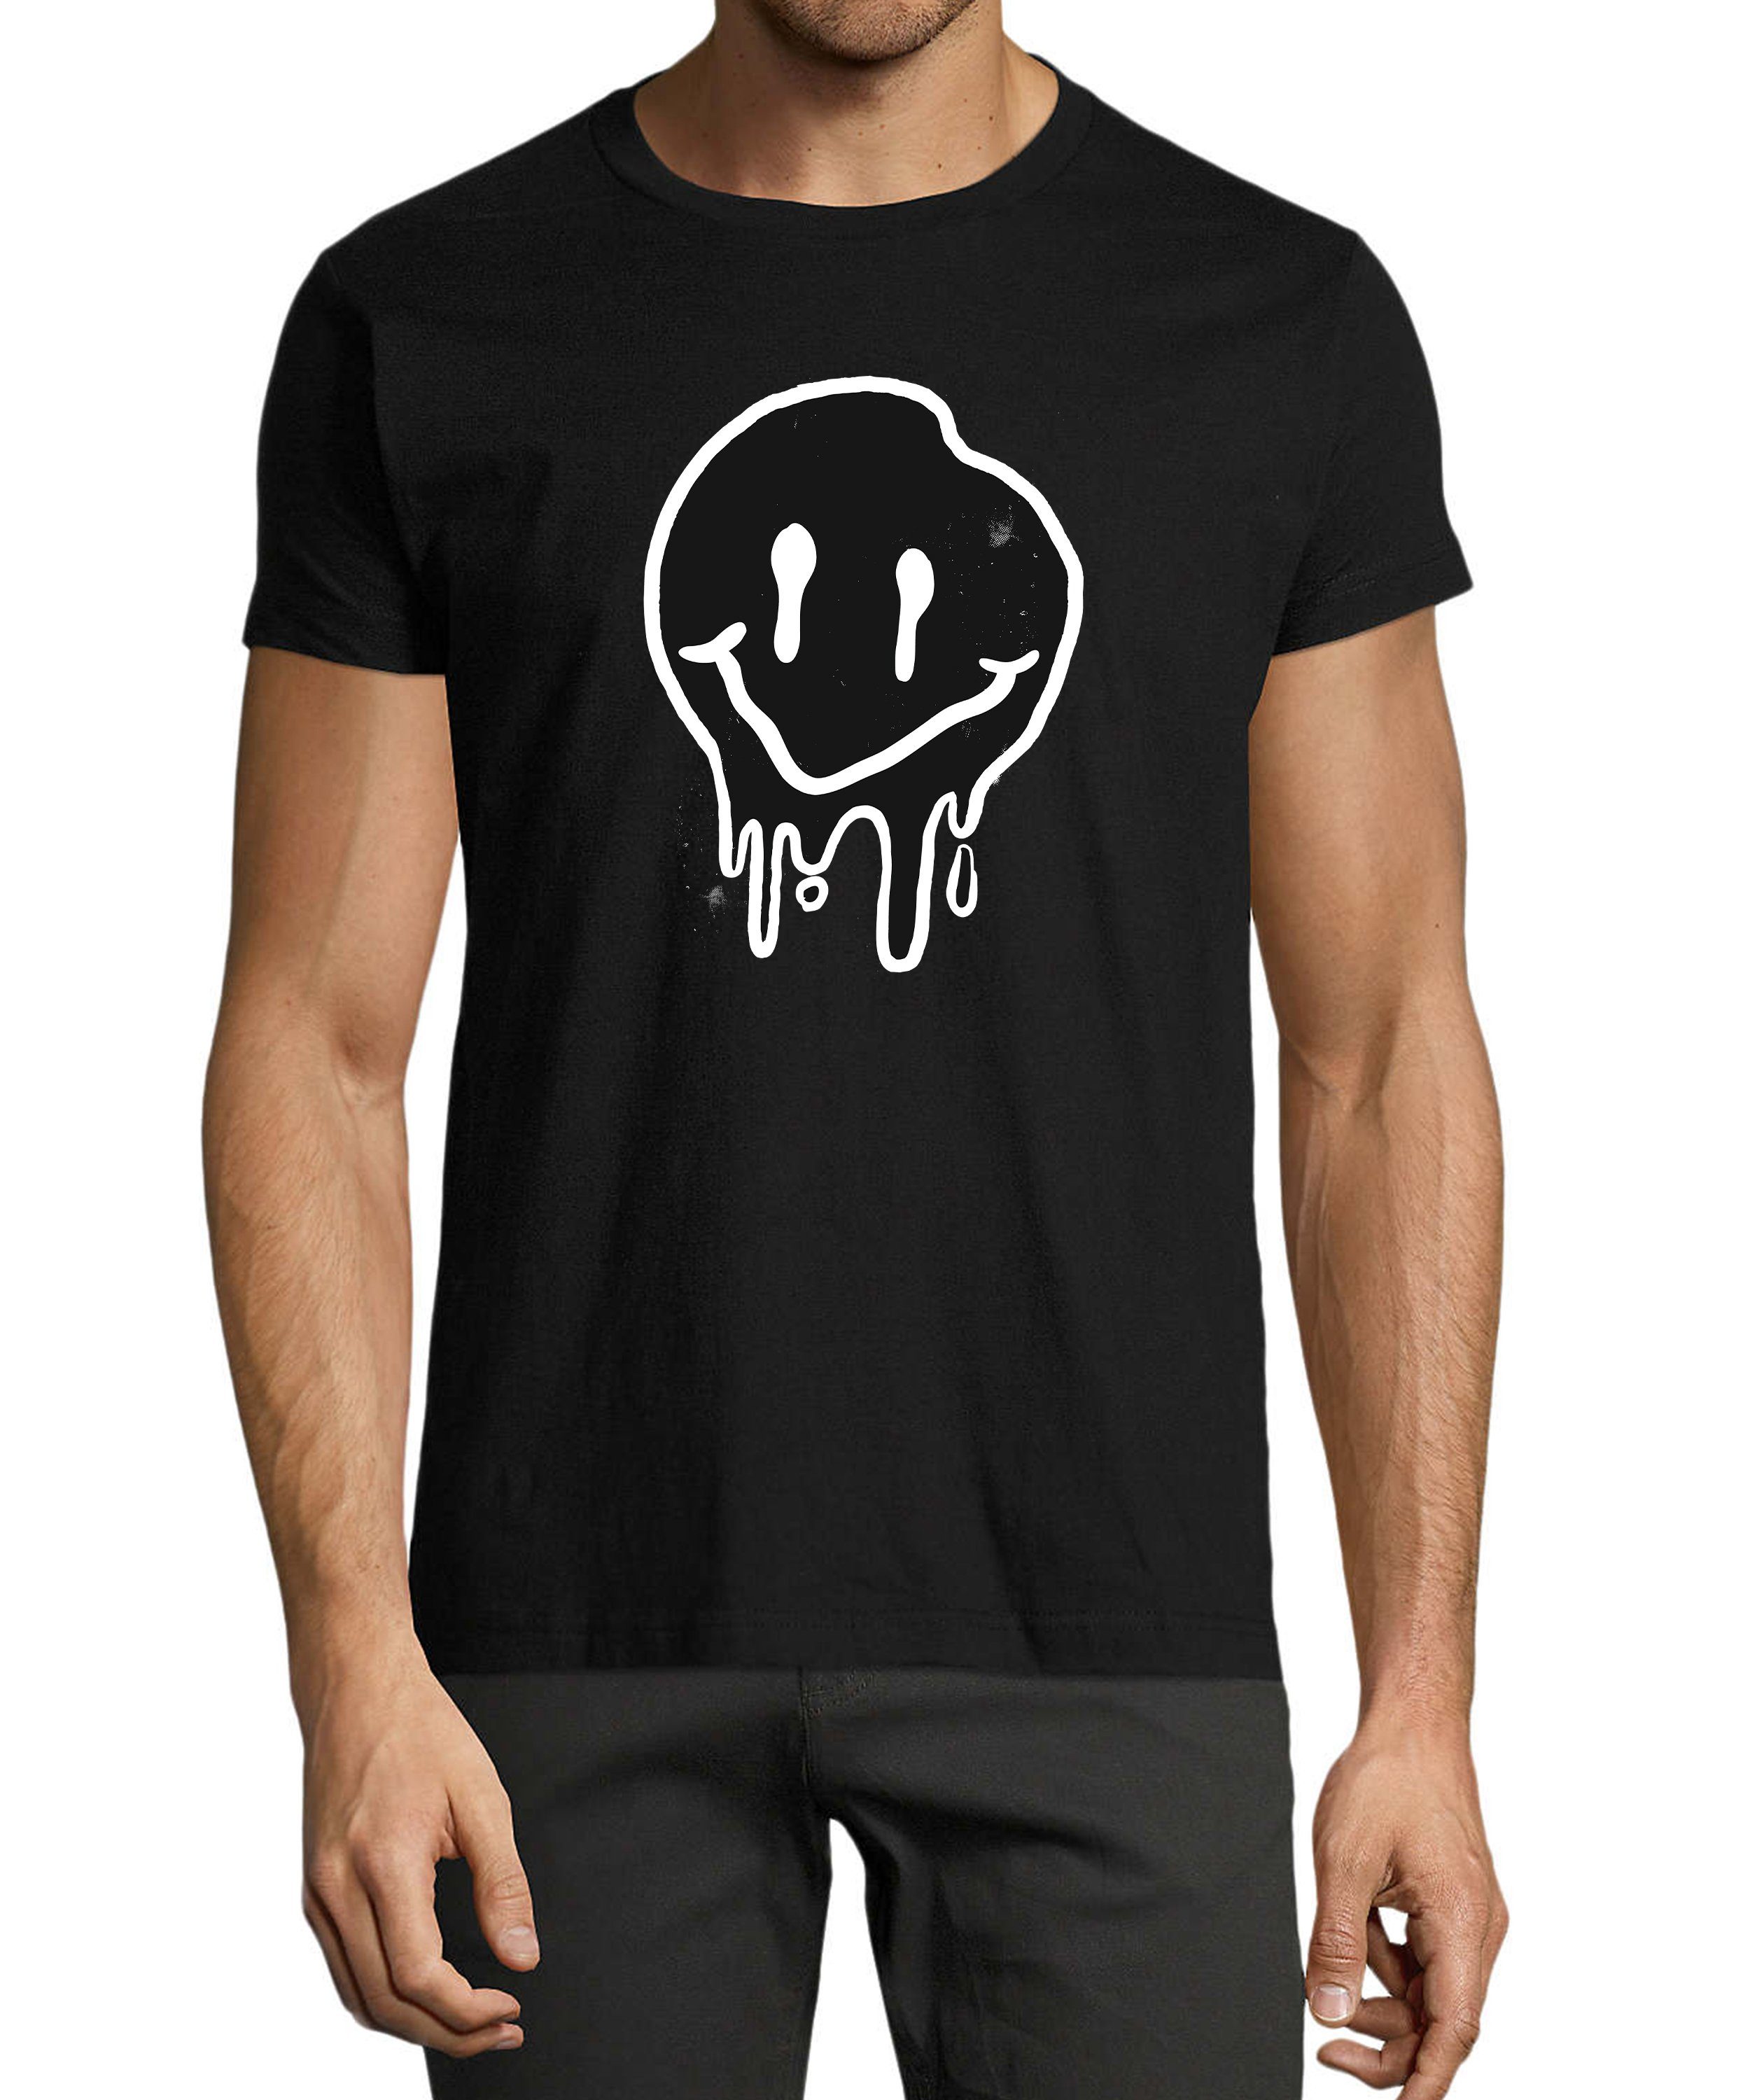 MyDesign24 T-Shirt Herren Smiley Print Shirt - Zerlaufender Smiley Baumwollshirt mit Aufdruck Regular Fit, i292 schwarz